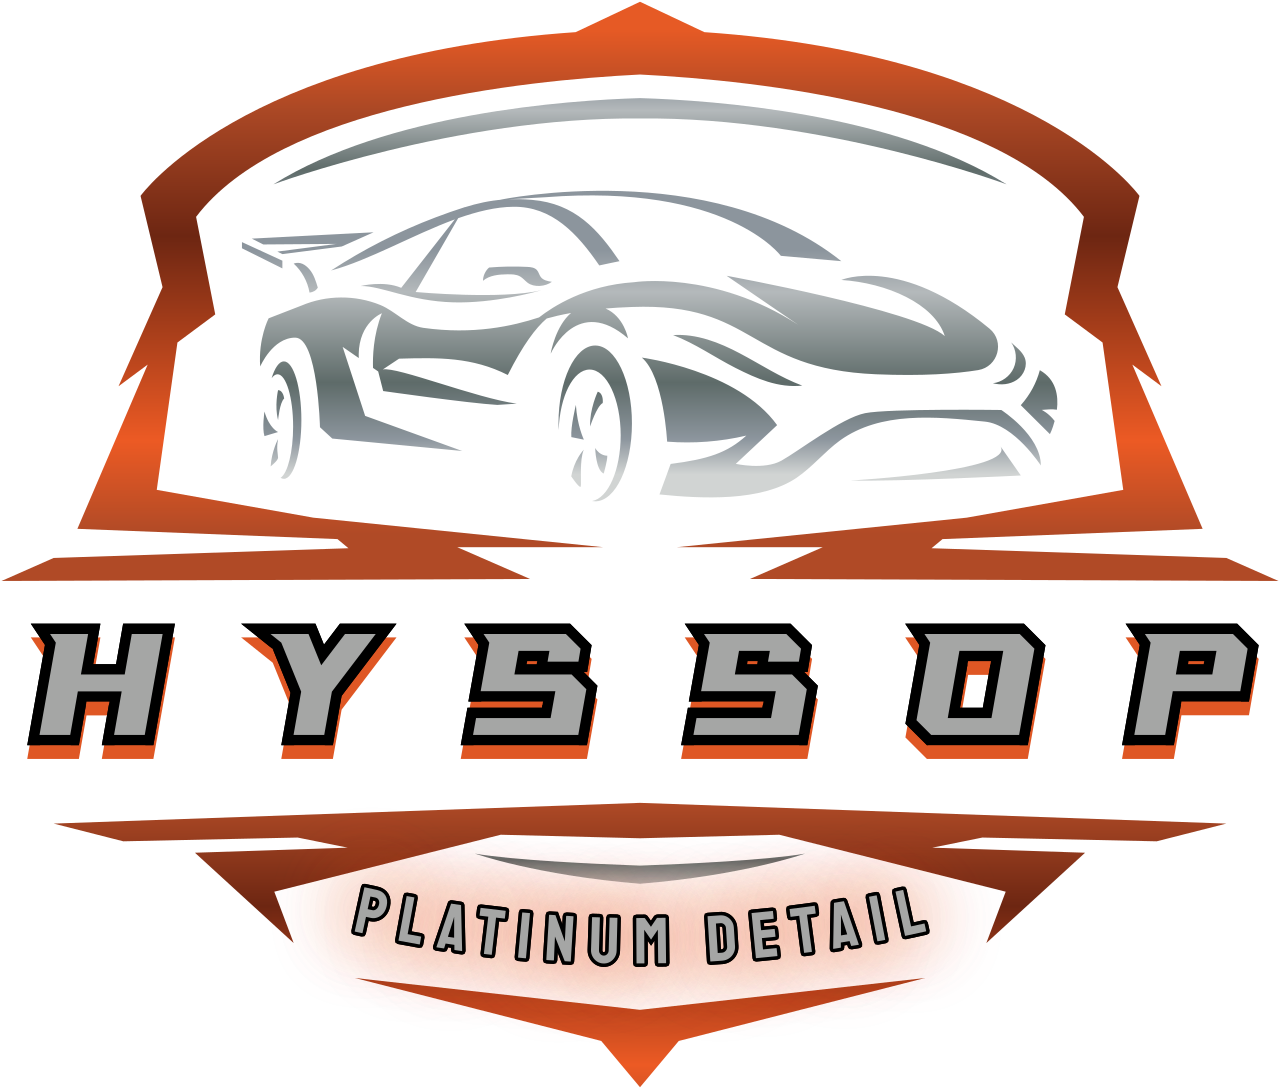 HYSSOP's logo